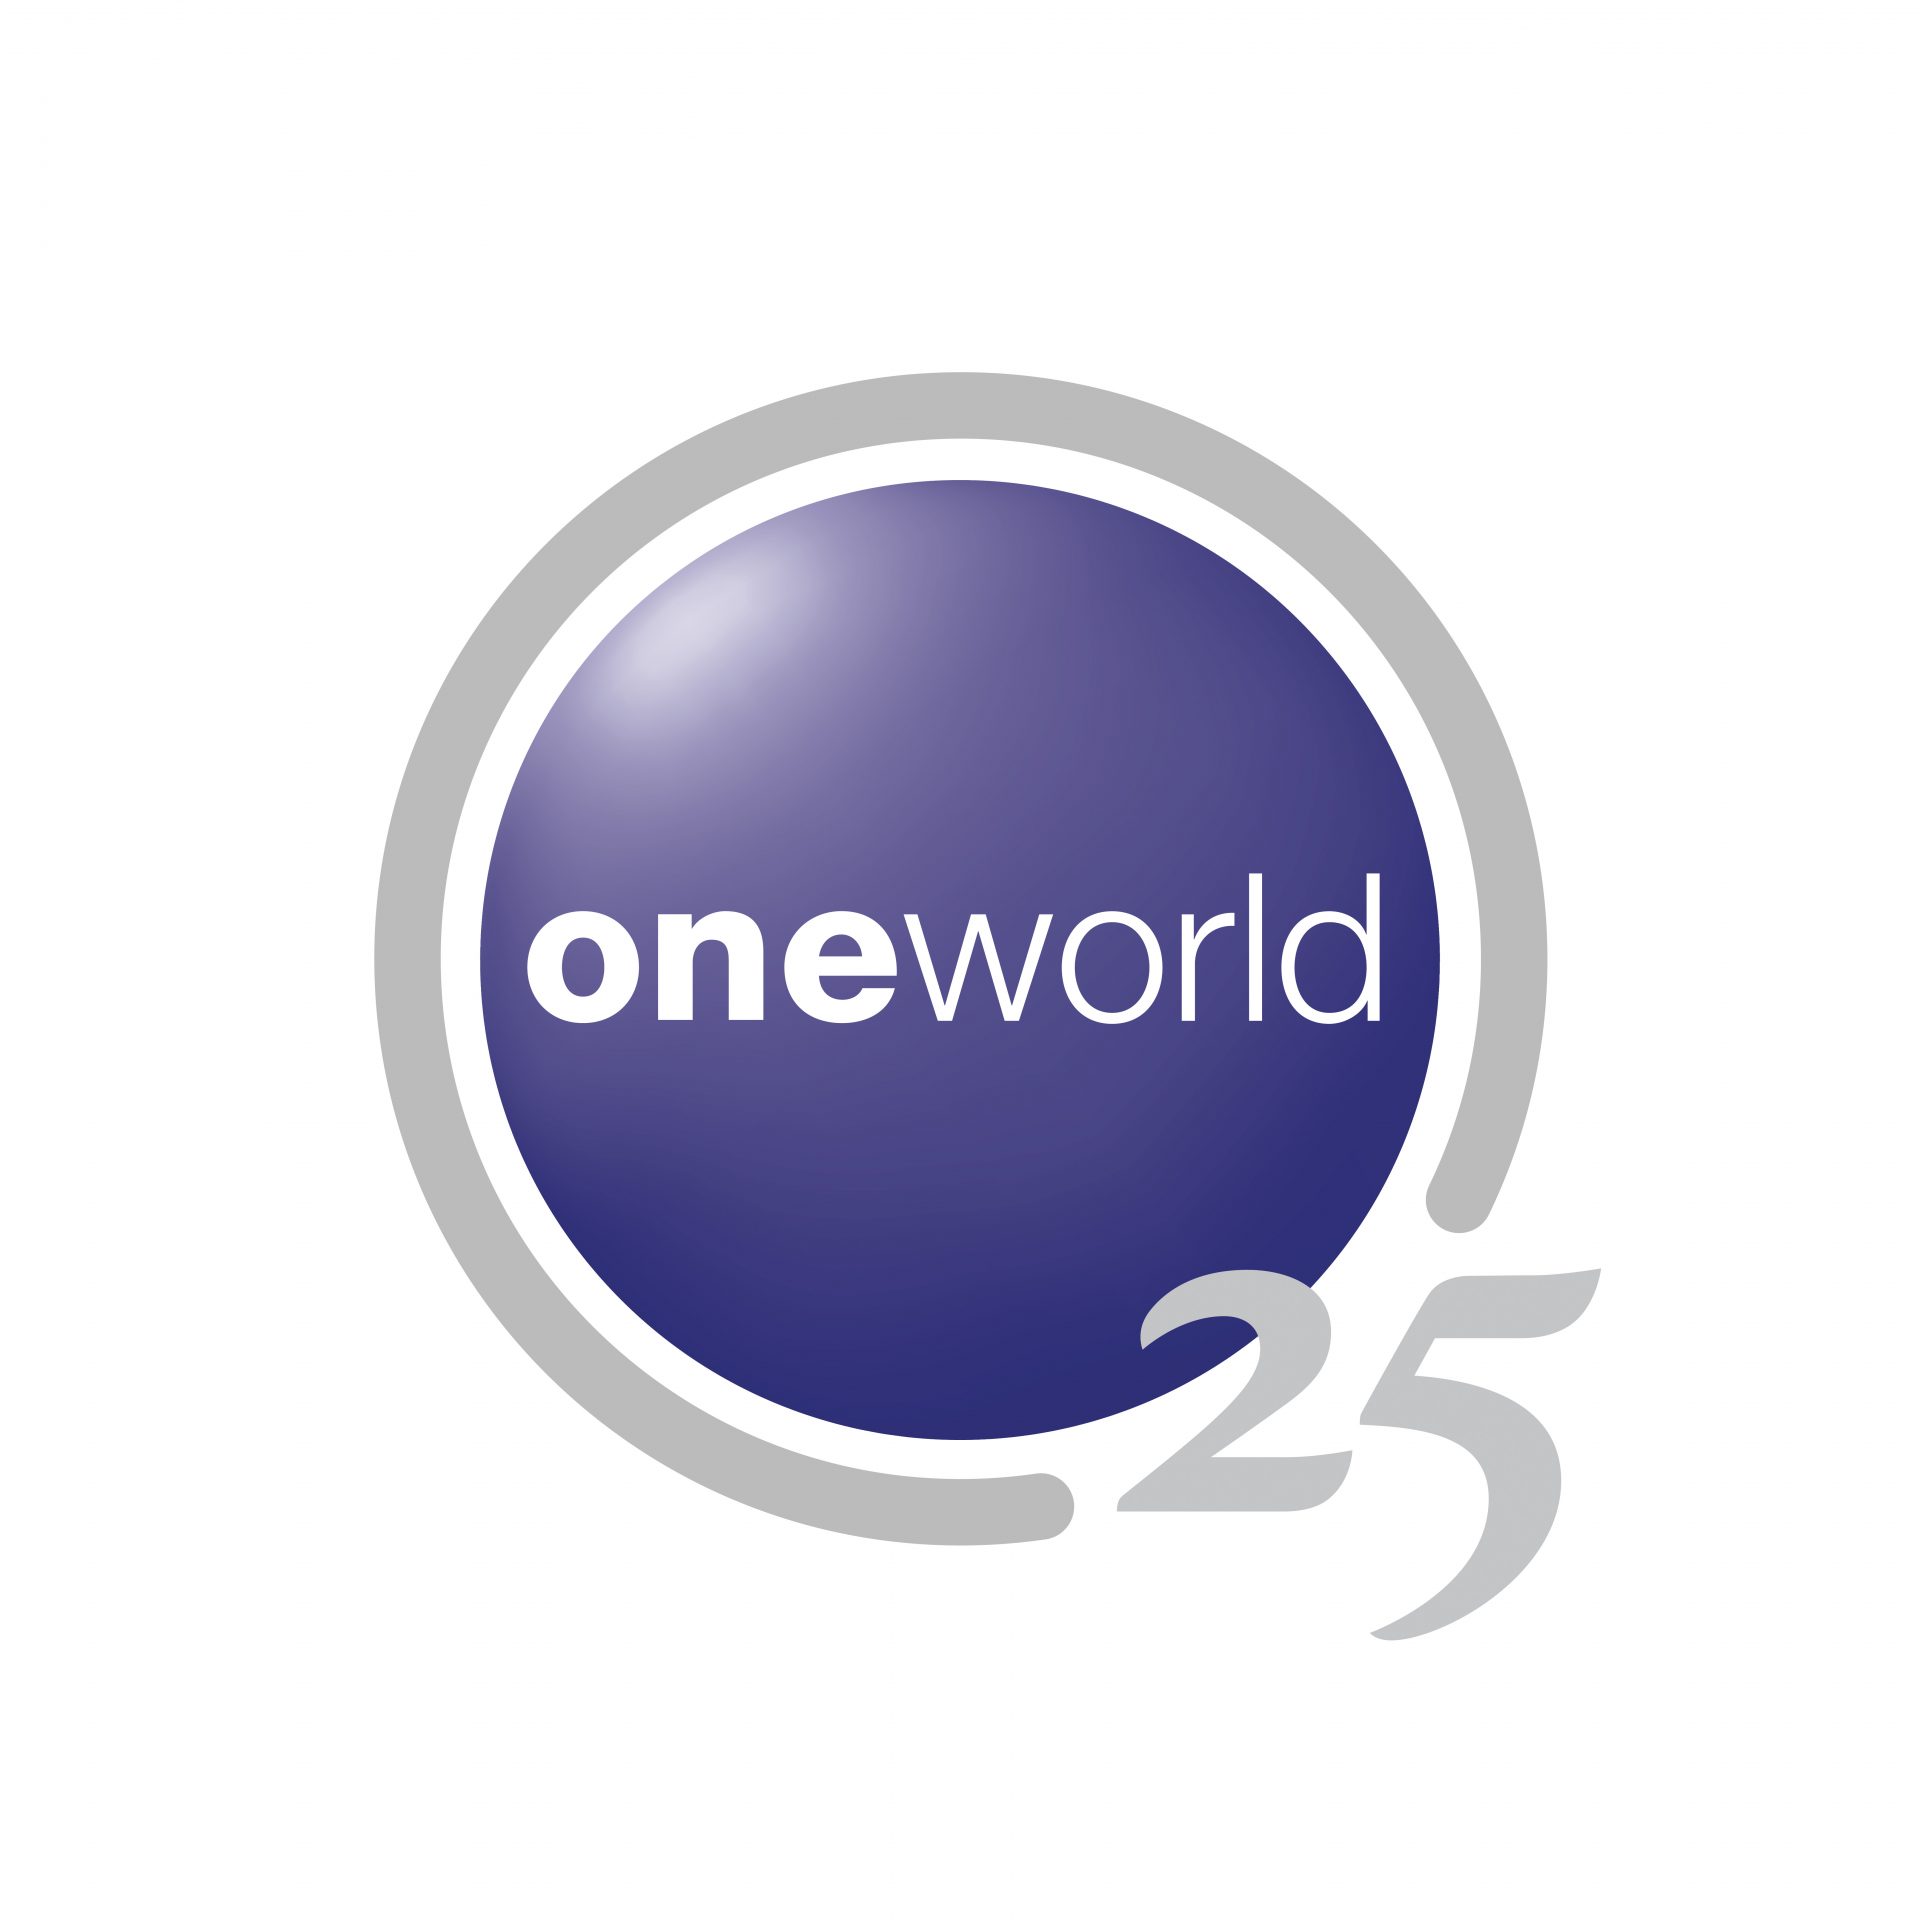 Celebrating 25 years of oneworld